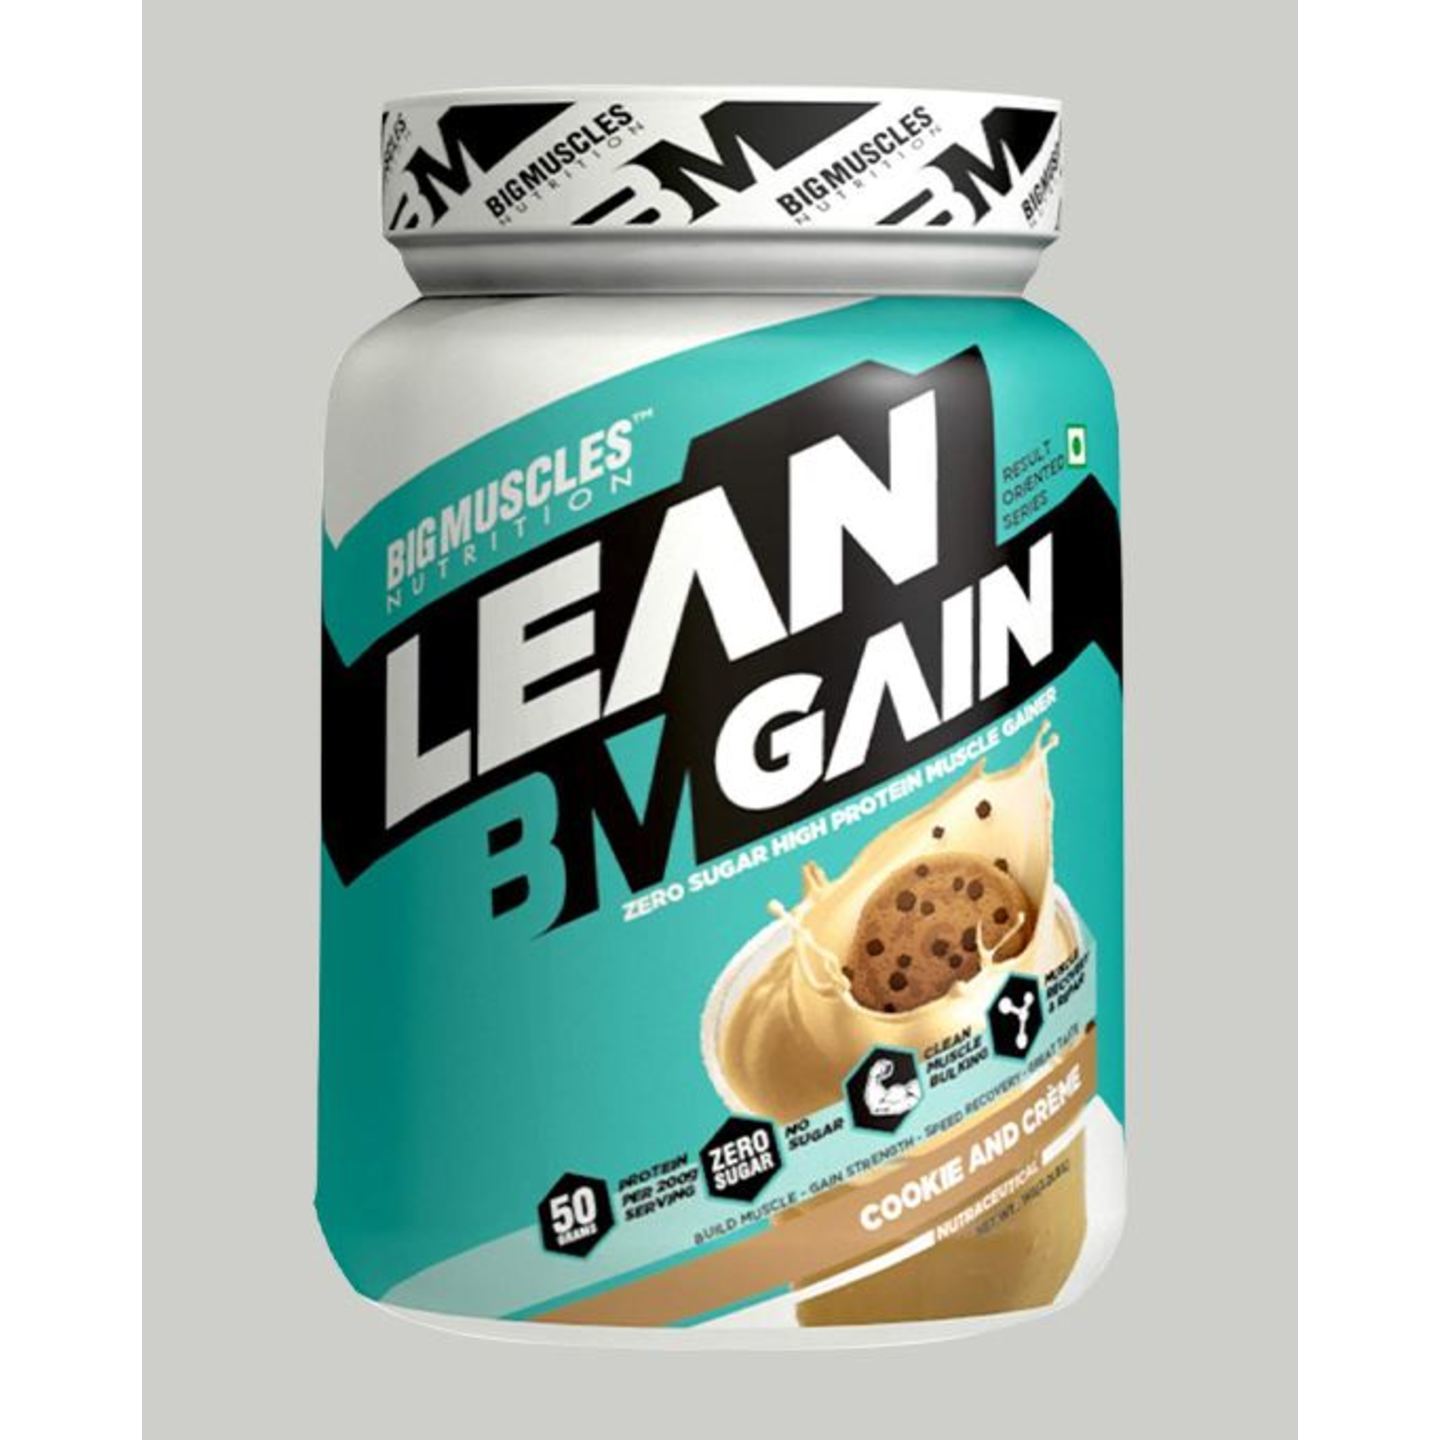 Bigmuscles Nutrition Lean Gain Cookie & Cream 2.2 lbs